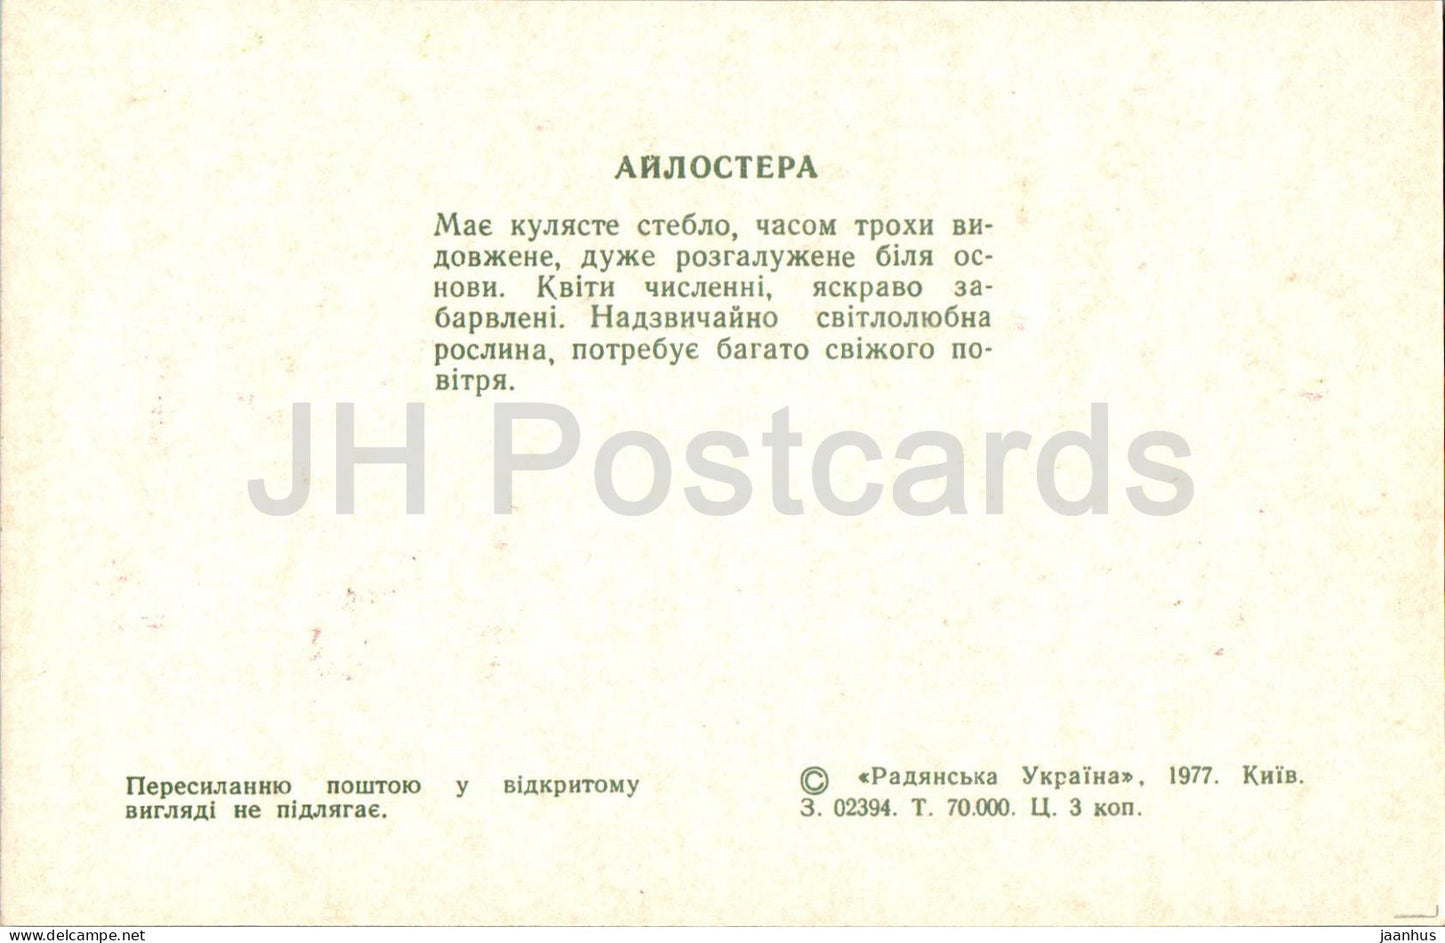 Aylostera - Kakteen - Kaktus - Blumen - 1977 - Ukraine UdSSR - unbenutzt 